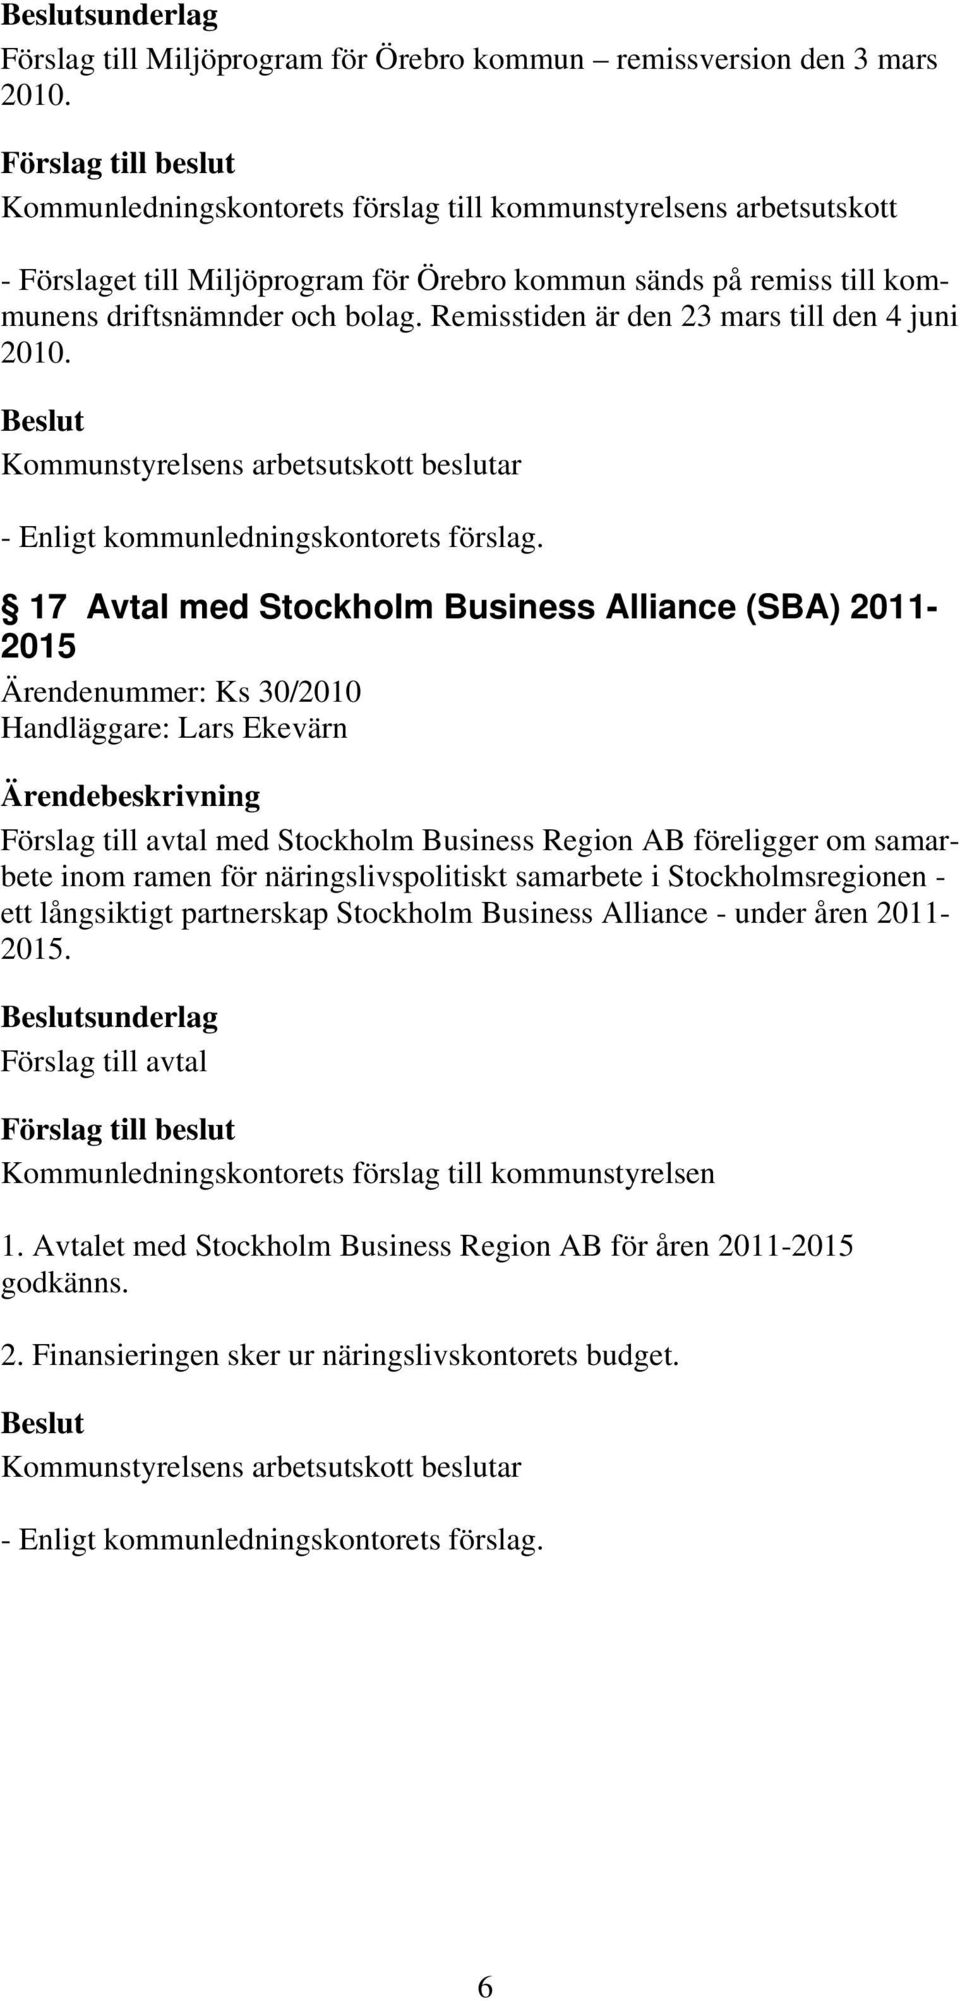 17 Avtal med Stockholm Business Alliance (SBA) 2011-2015 Ärendenummer: Ks 30/2010 Handläggare: Lars Ekevärn Förslag till avtal med Stockholm Business Region AB föreligger om samarbete inom ramen